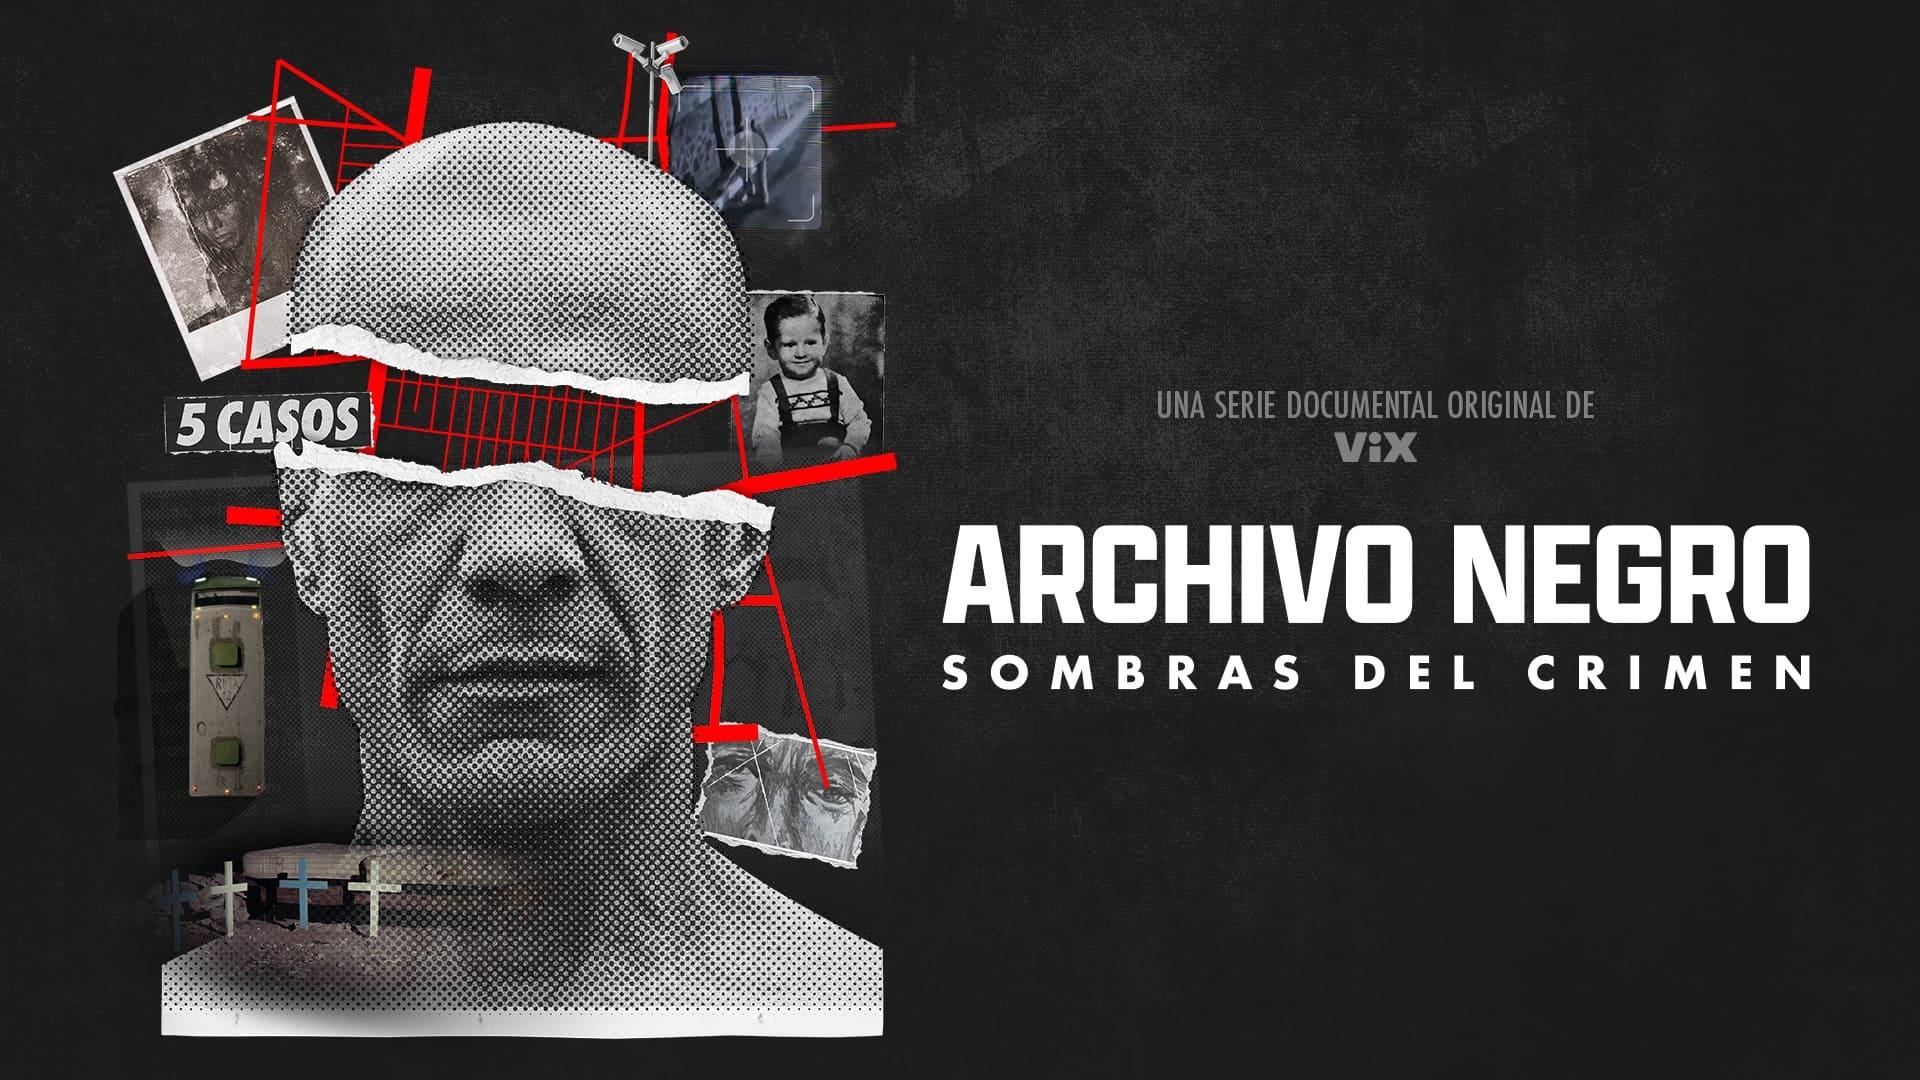 ARCHIVO NEGRO, serie documental con algunos de los casos criminales de mayor impacto en México